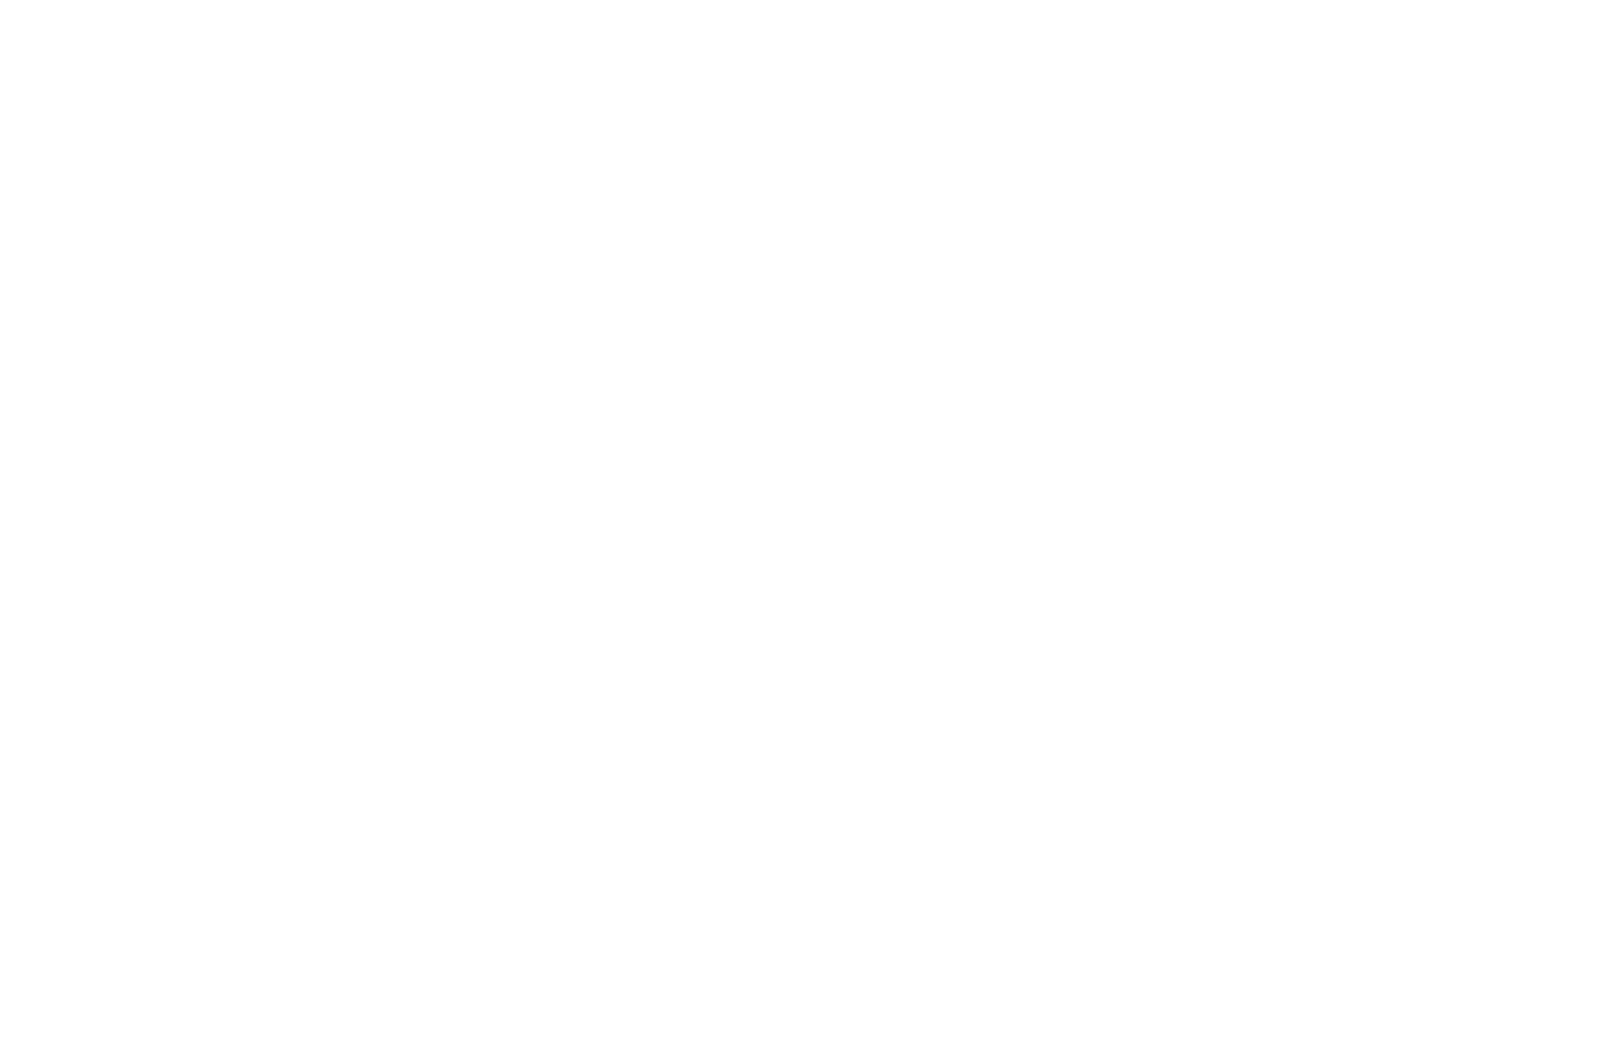 Barratt Developments logo large for dark backgrounds (transparent PNG)